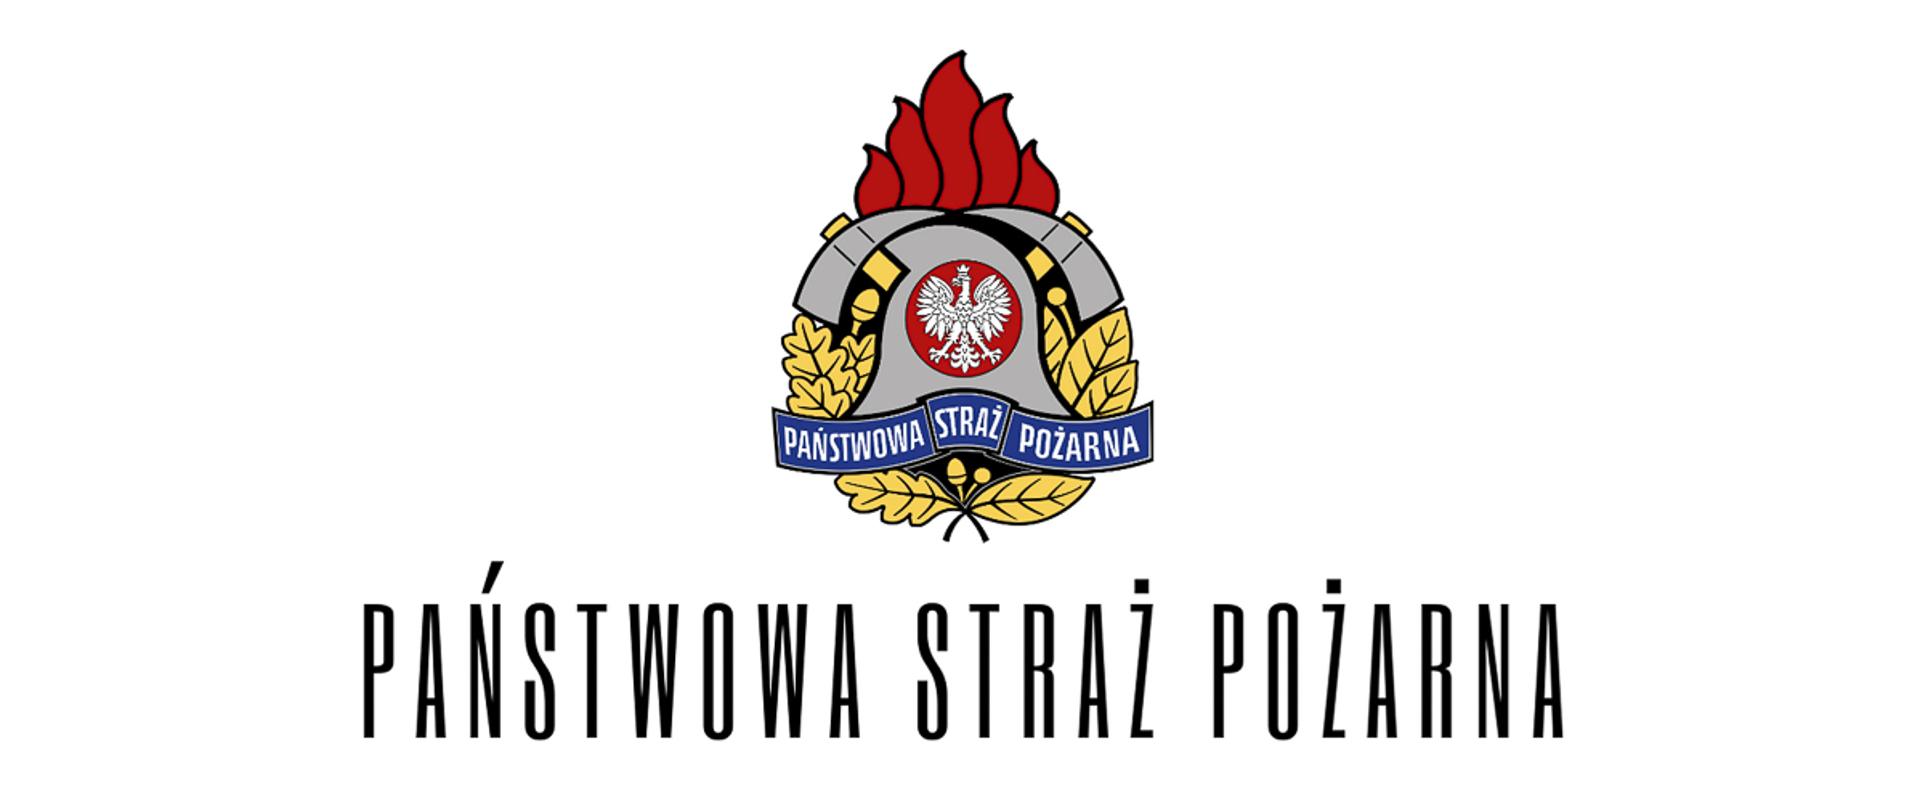 Na fotografii widnieje logotyp Państwowej Straży Pożarnej. Ma on kształt hełmu wraz z toporkami.